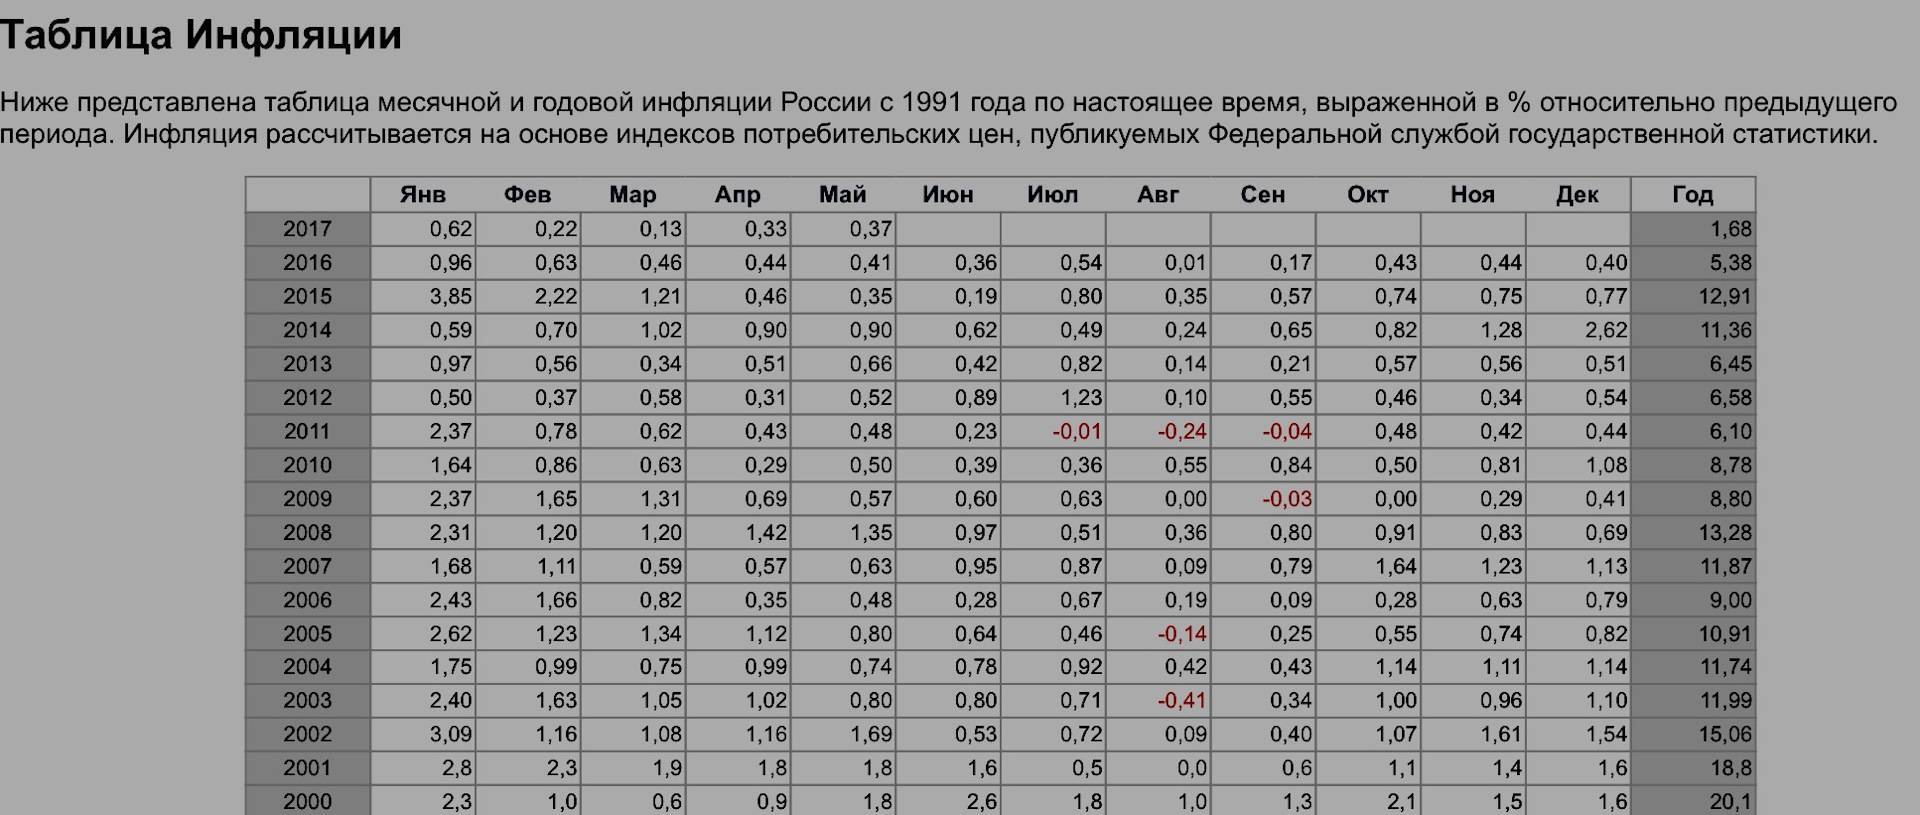 Инфляция в россии, уровень инфляции в россии по годам в процентах